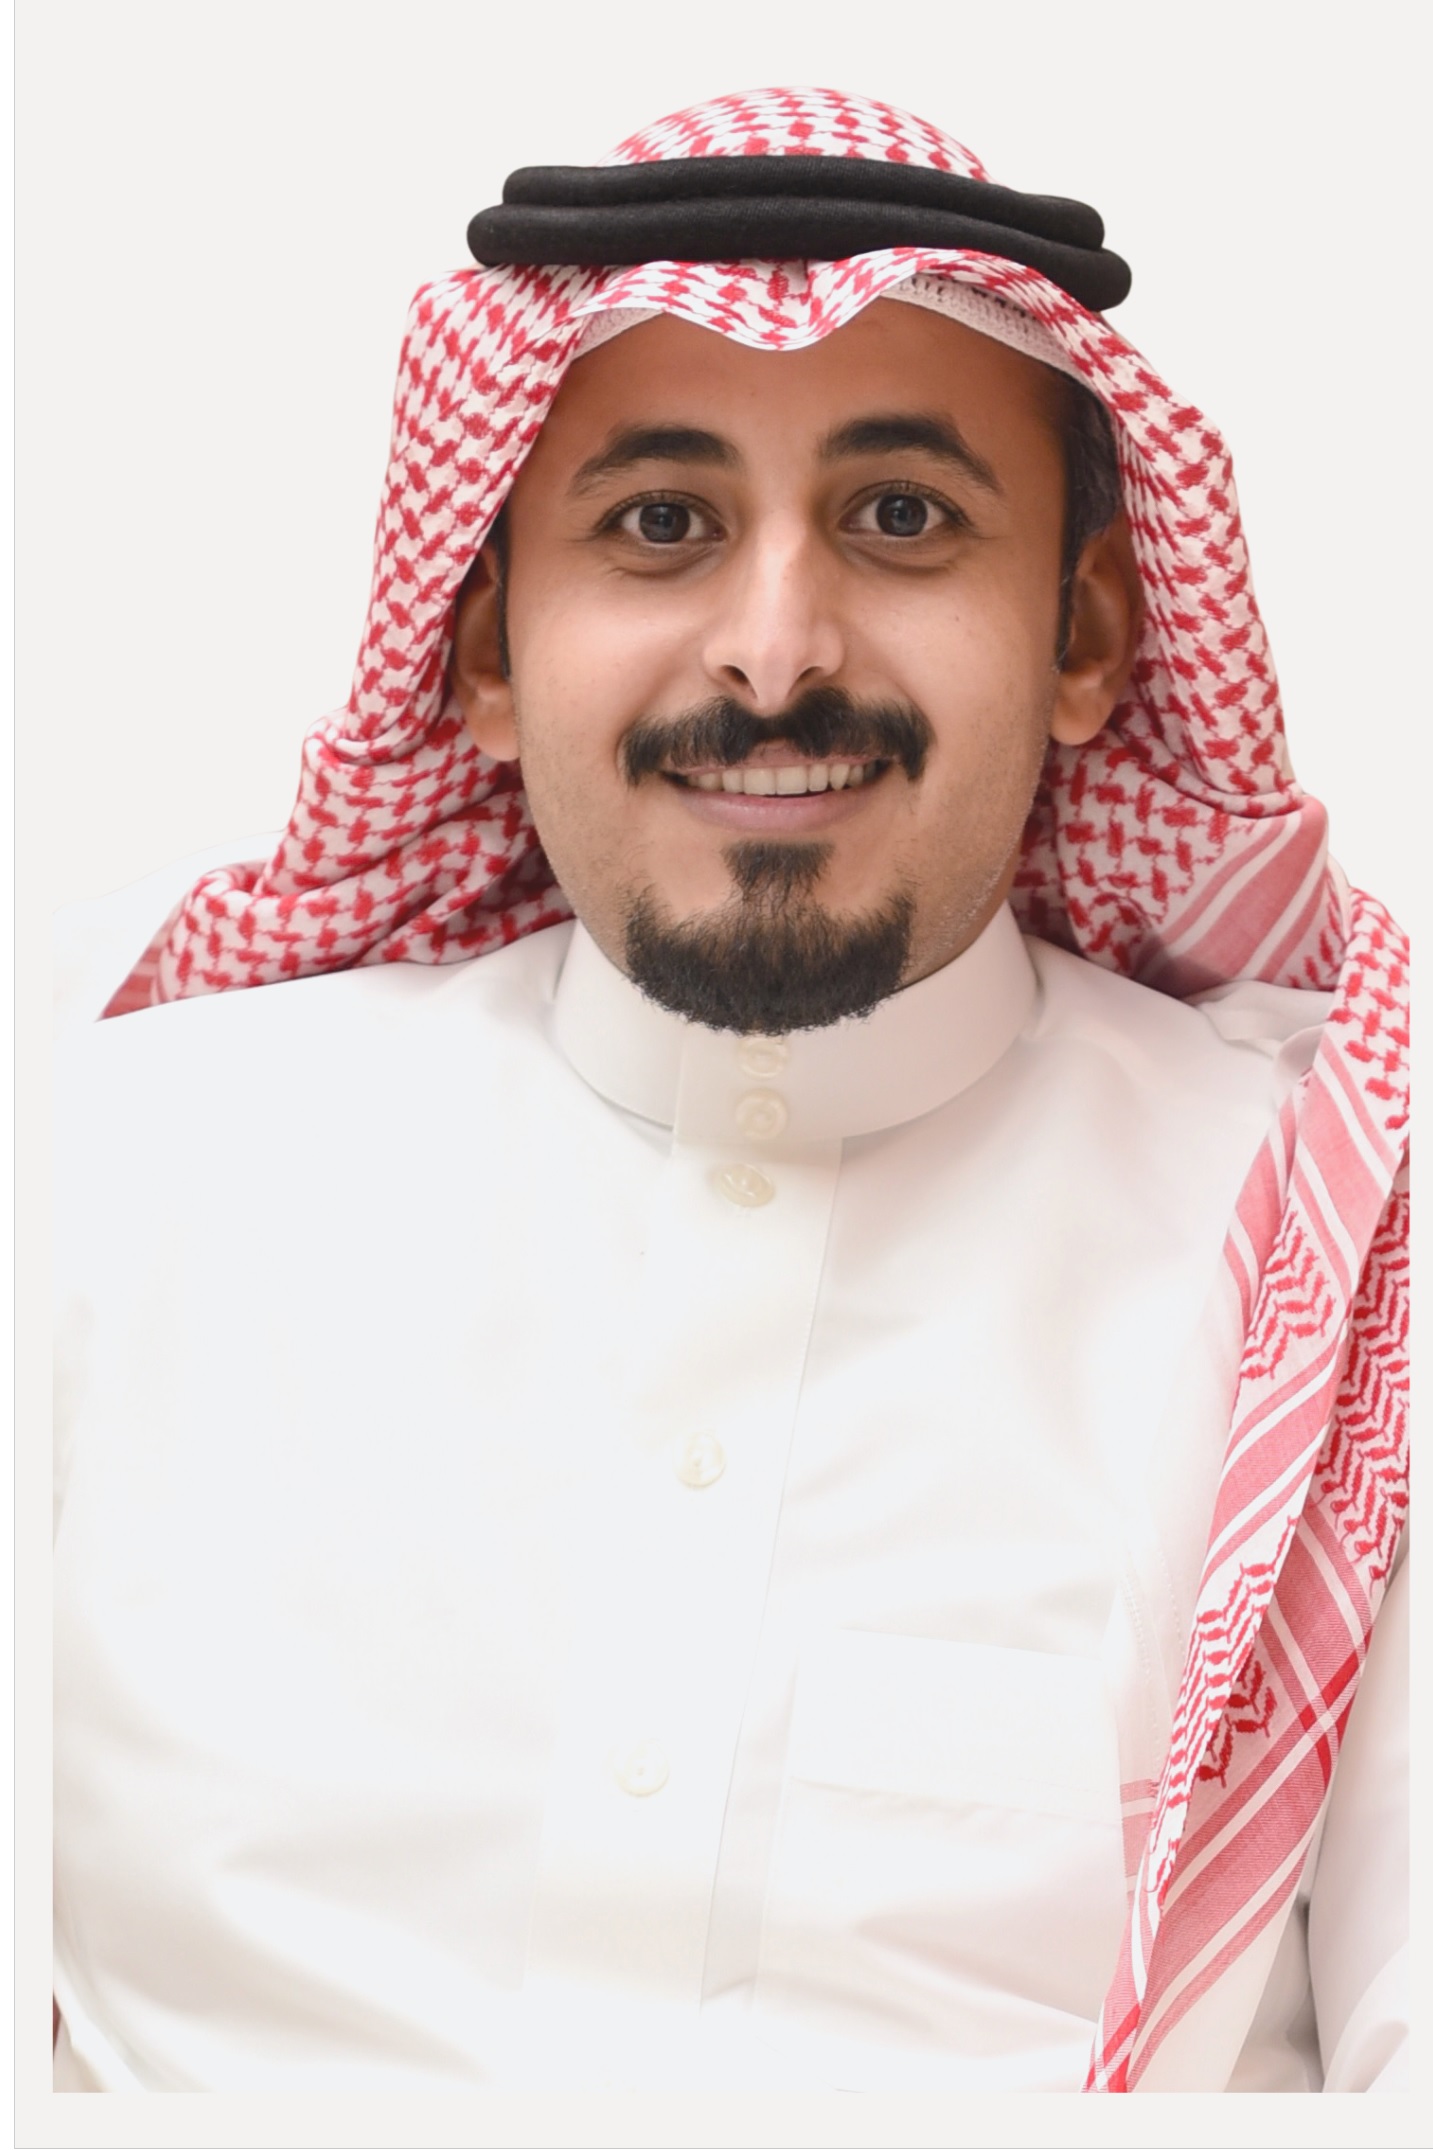 Mr. Abdullah Al-Omari